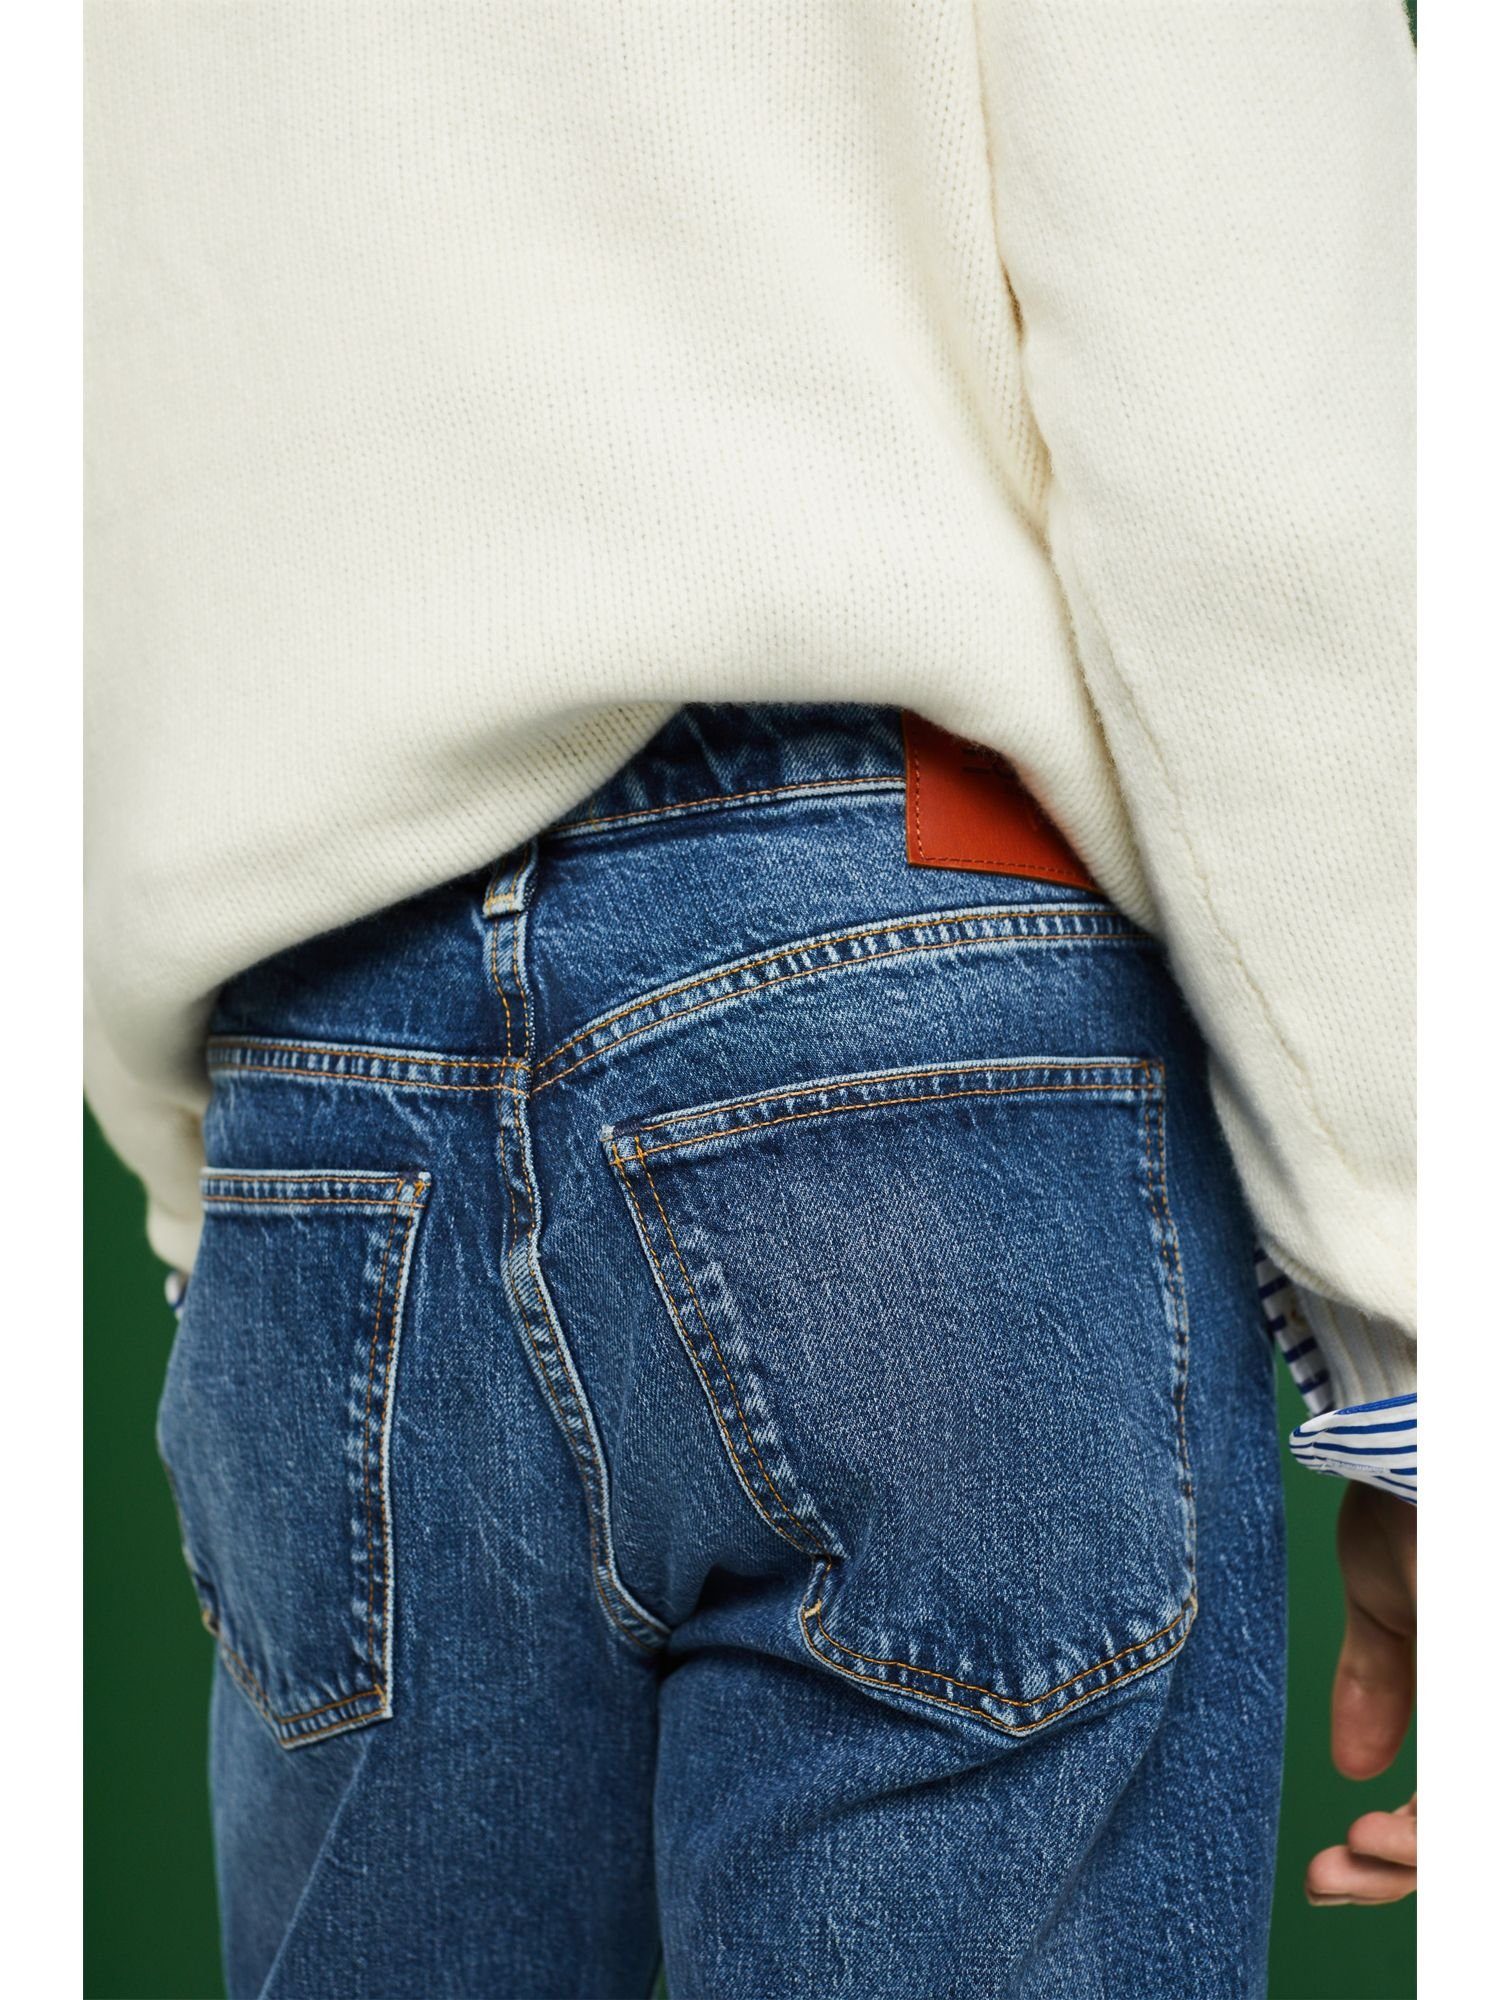 Retro-Jeans Lockere mittlerer Bundhöhe mit Straight-Jeans Esprit